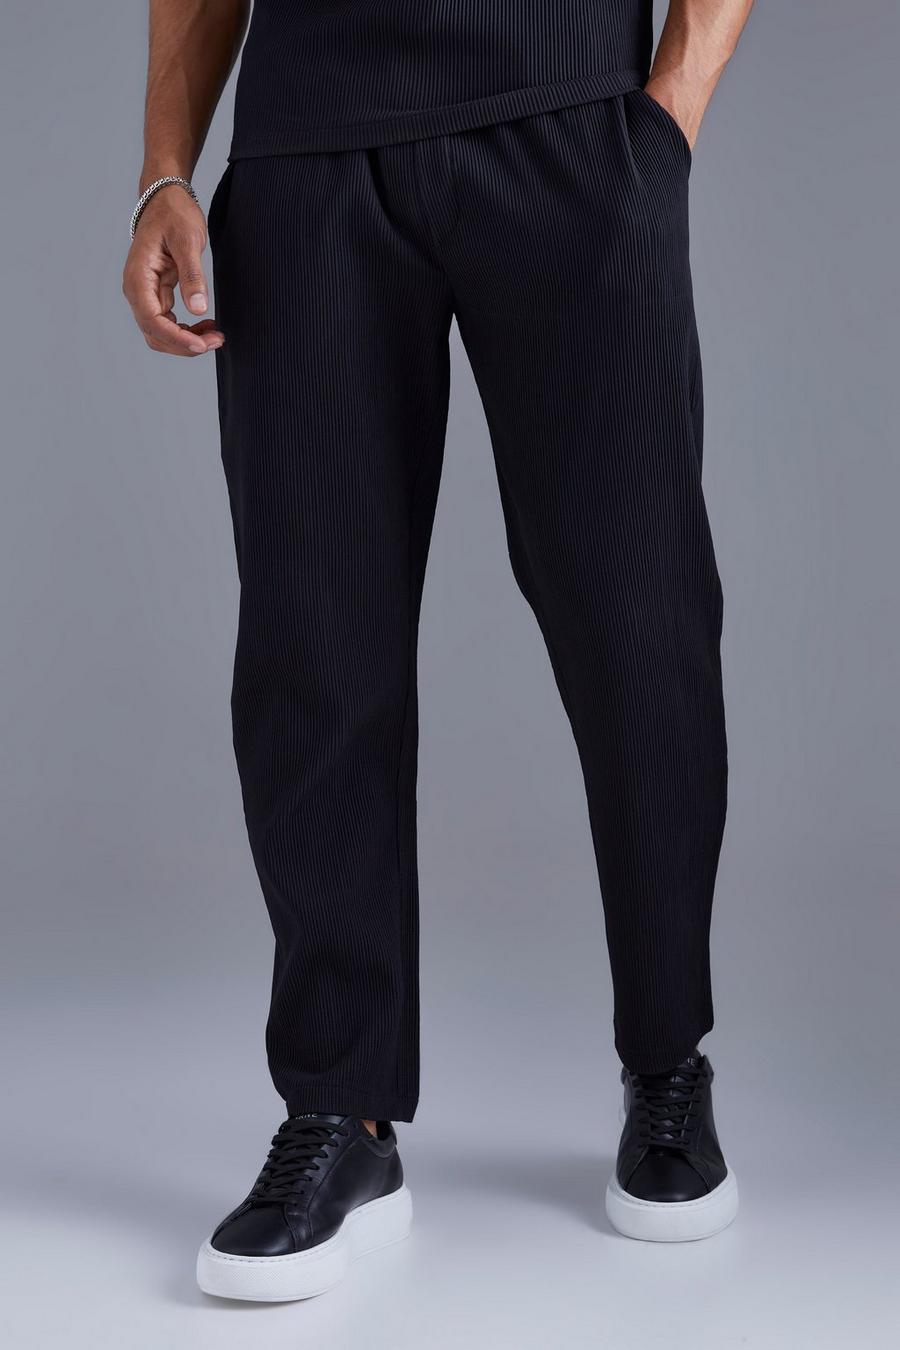 Pantalón plisado ajustado con cintura elástica, Black